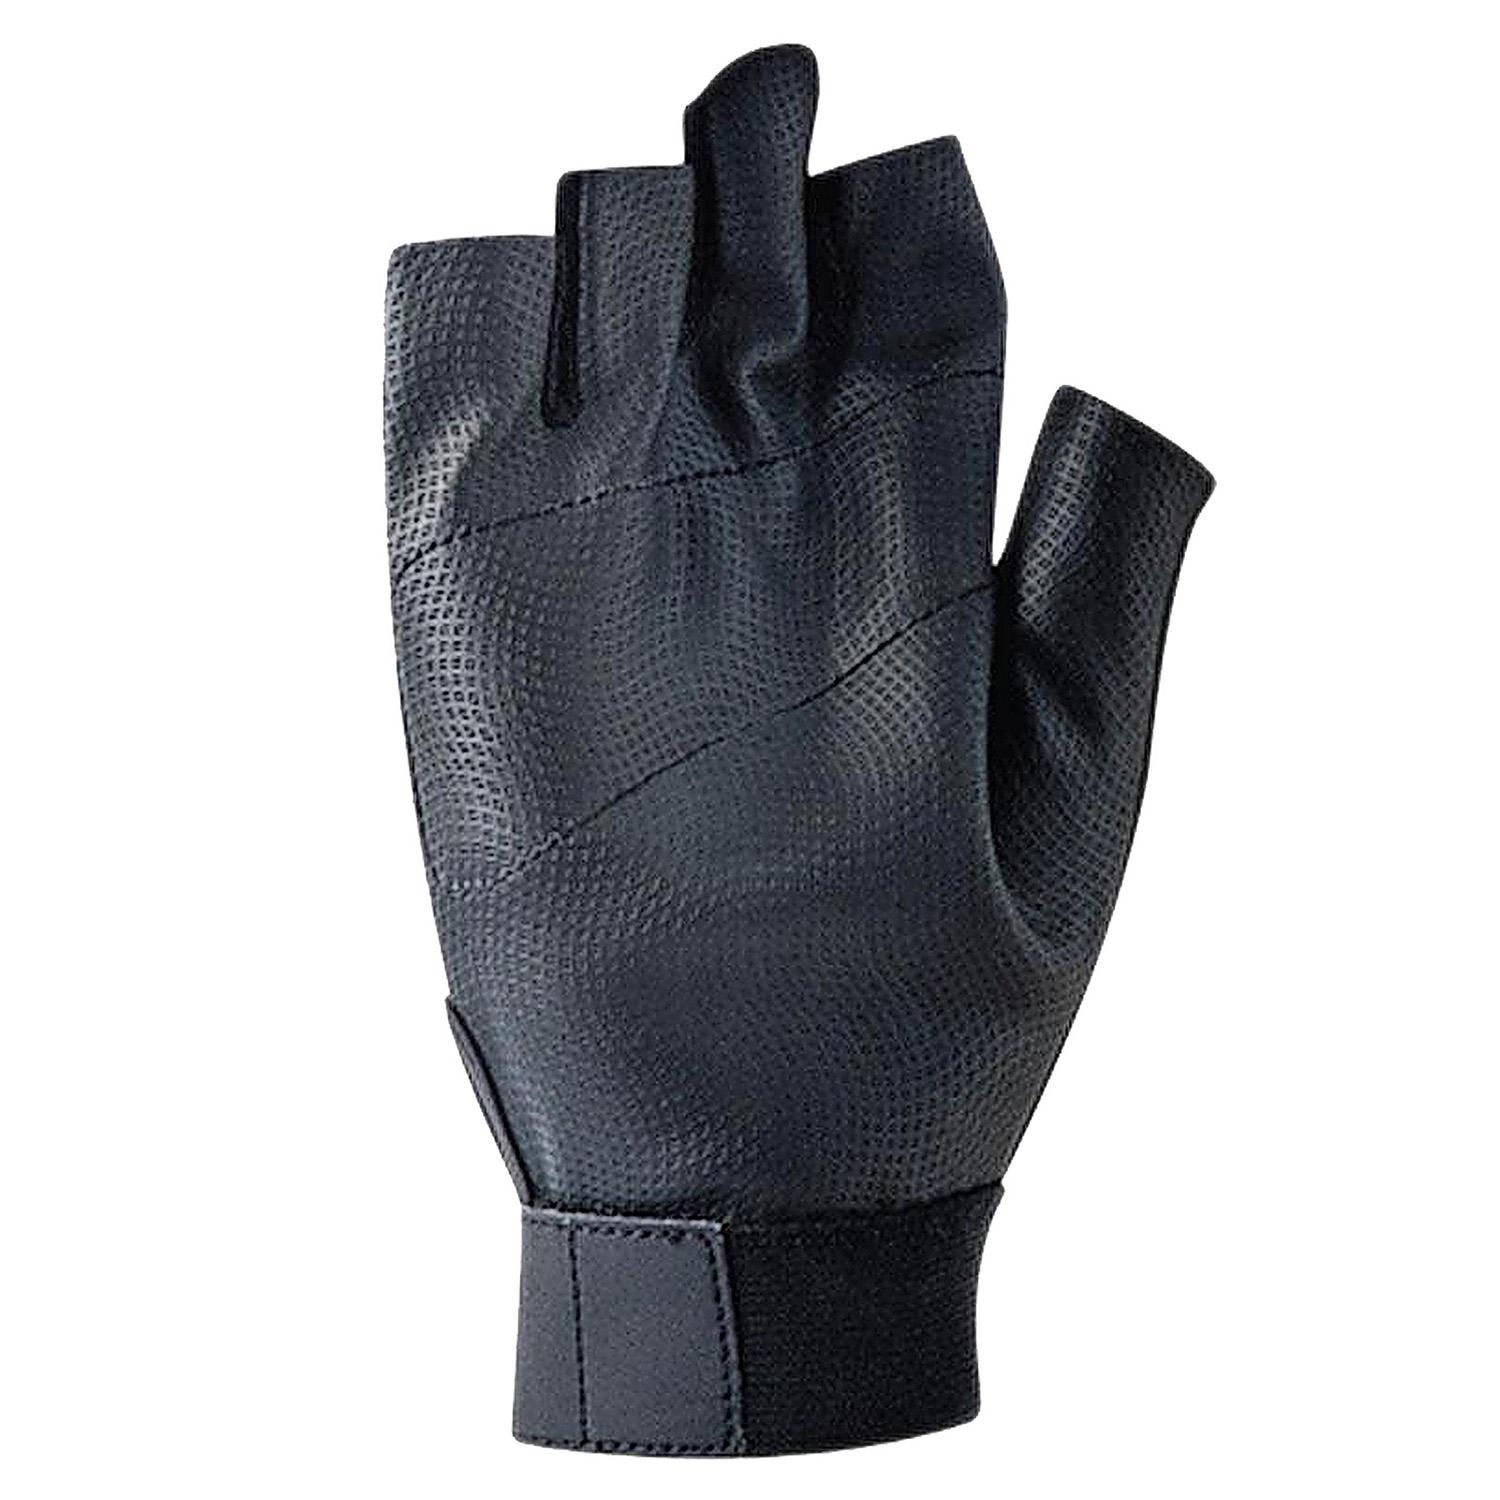 Nike Legendary Training Gloves - Black/White - Tennisnuts.com